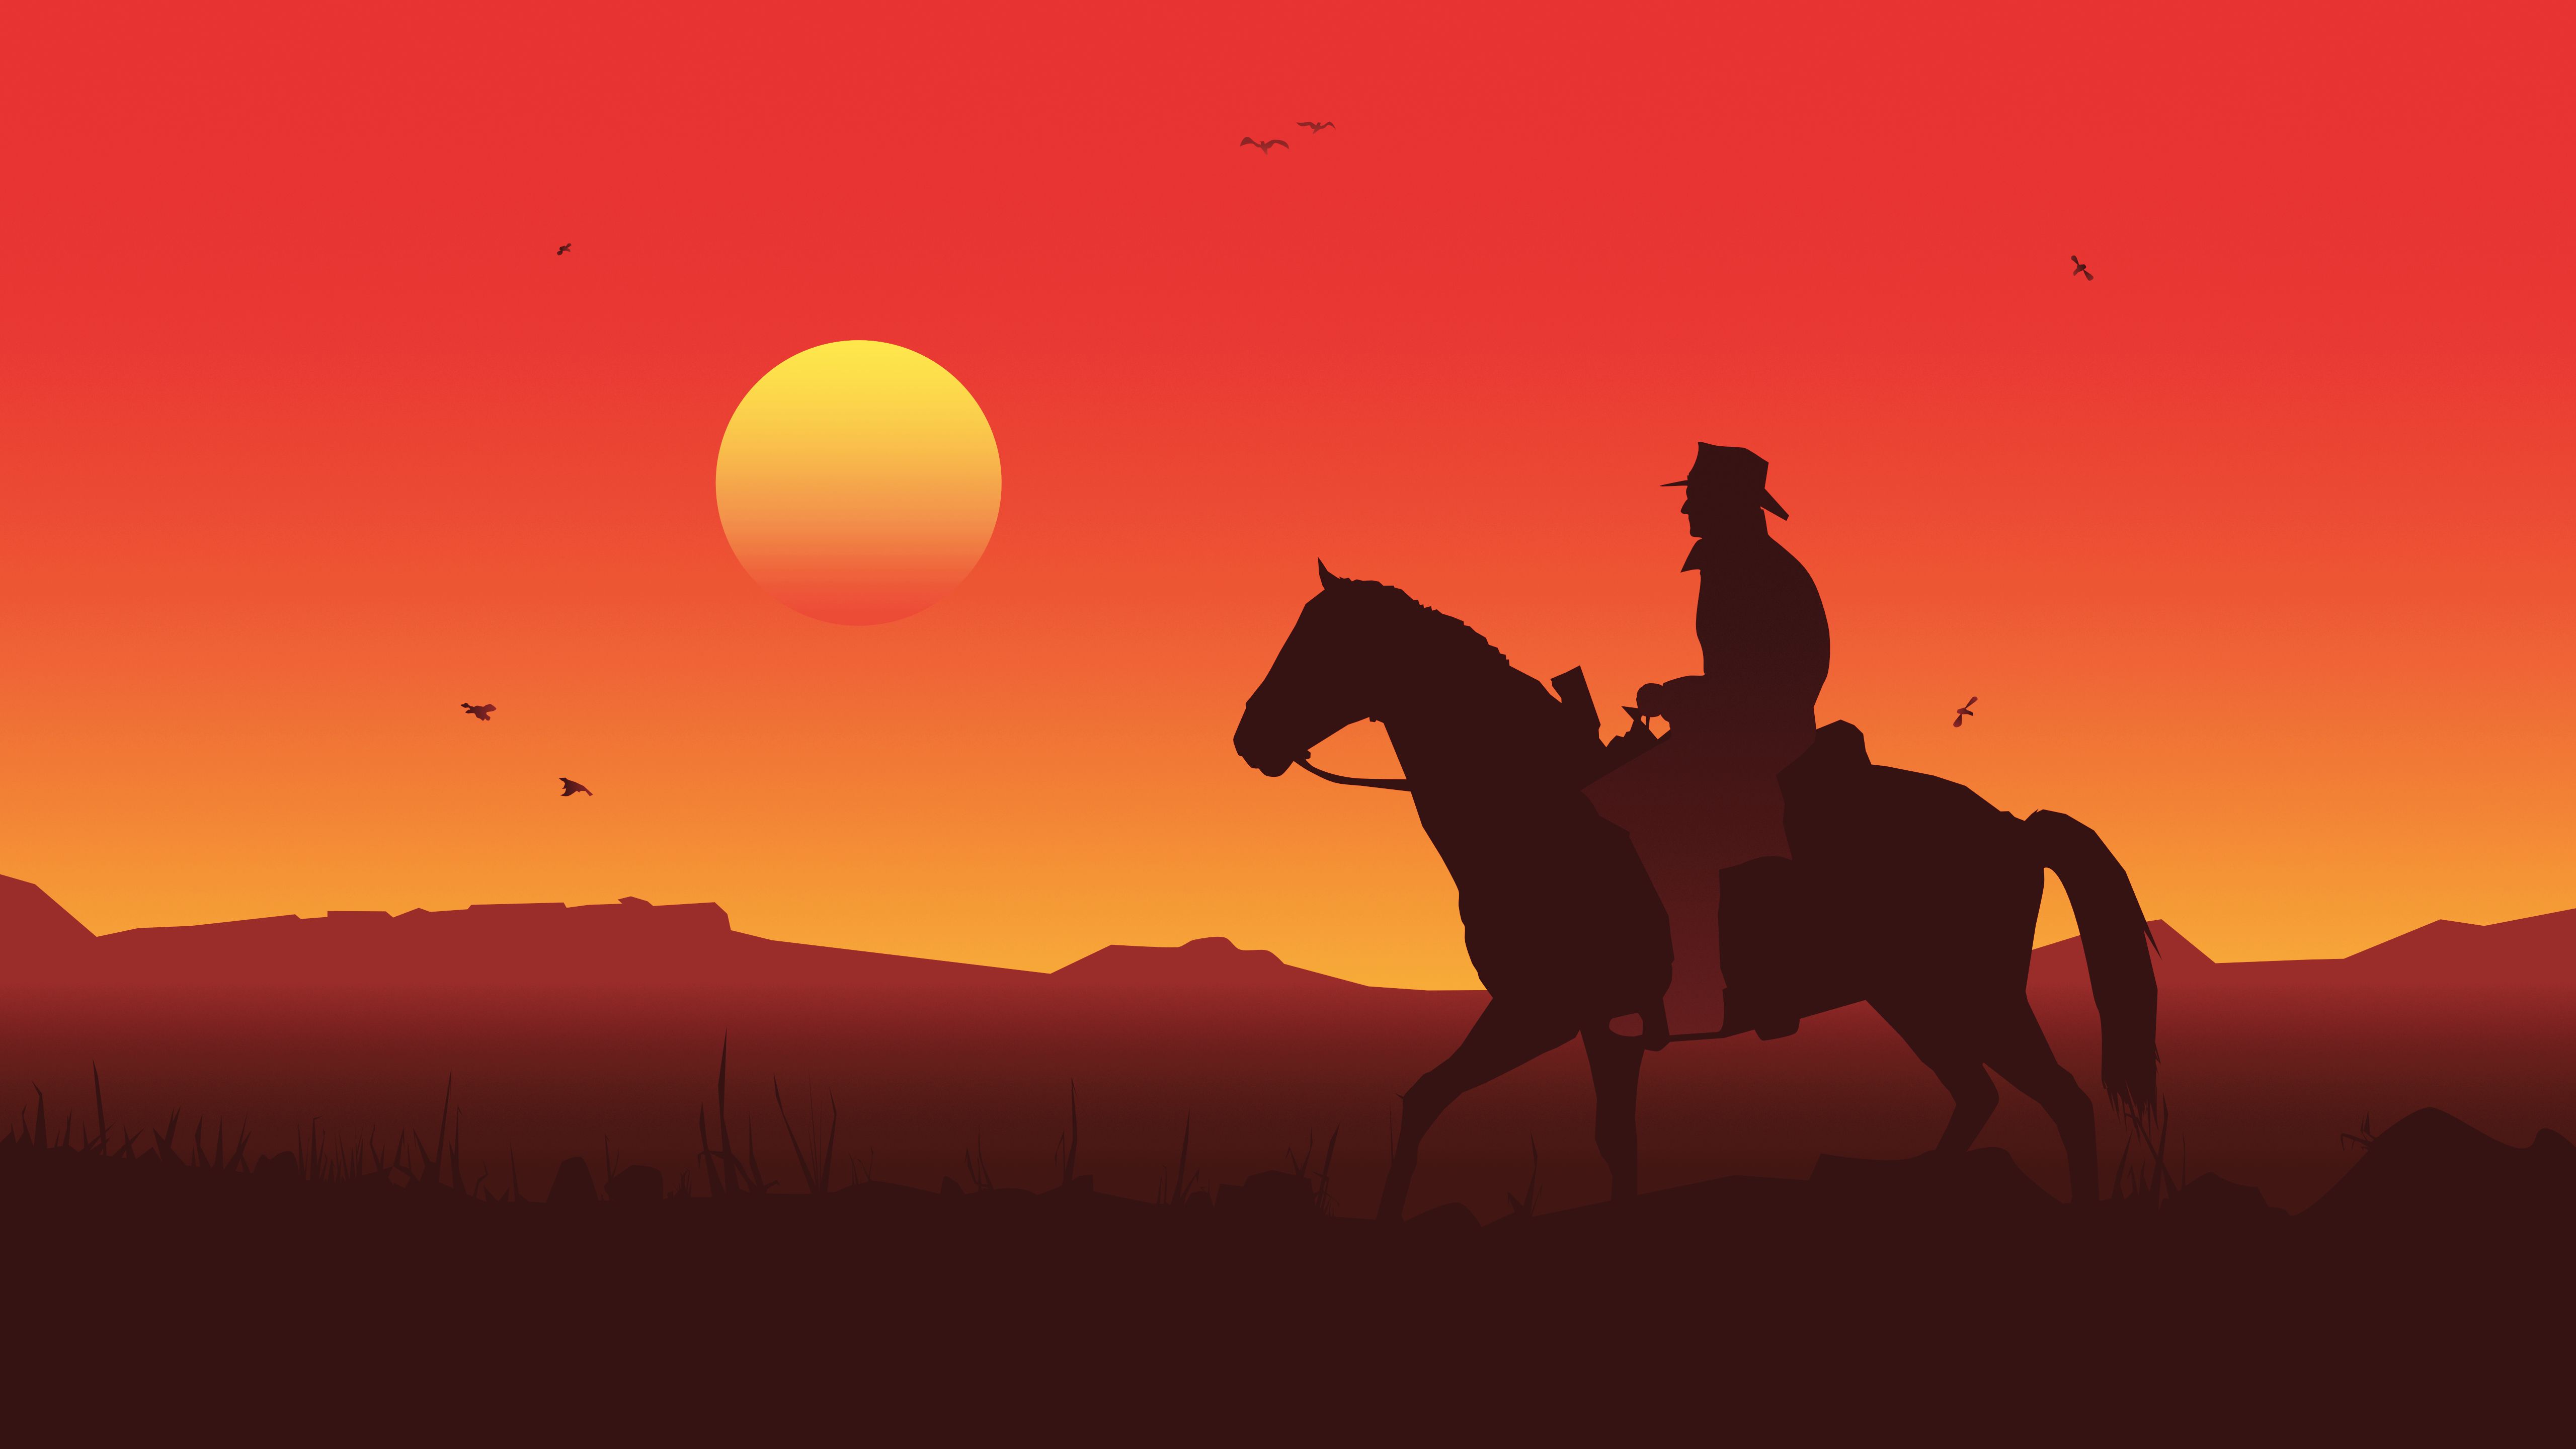 Red Dead Redemption 2 Illustration 5k